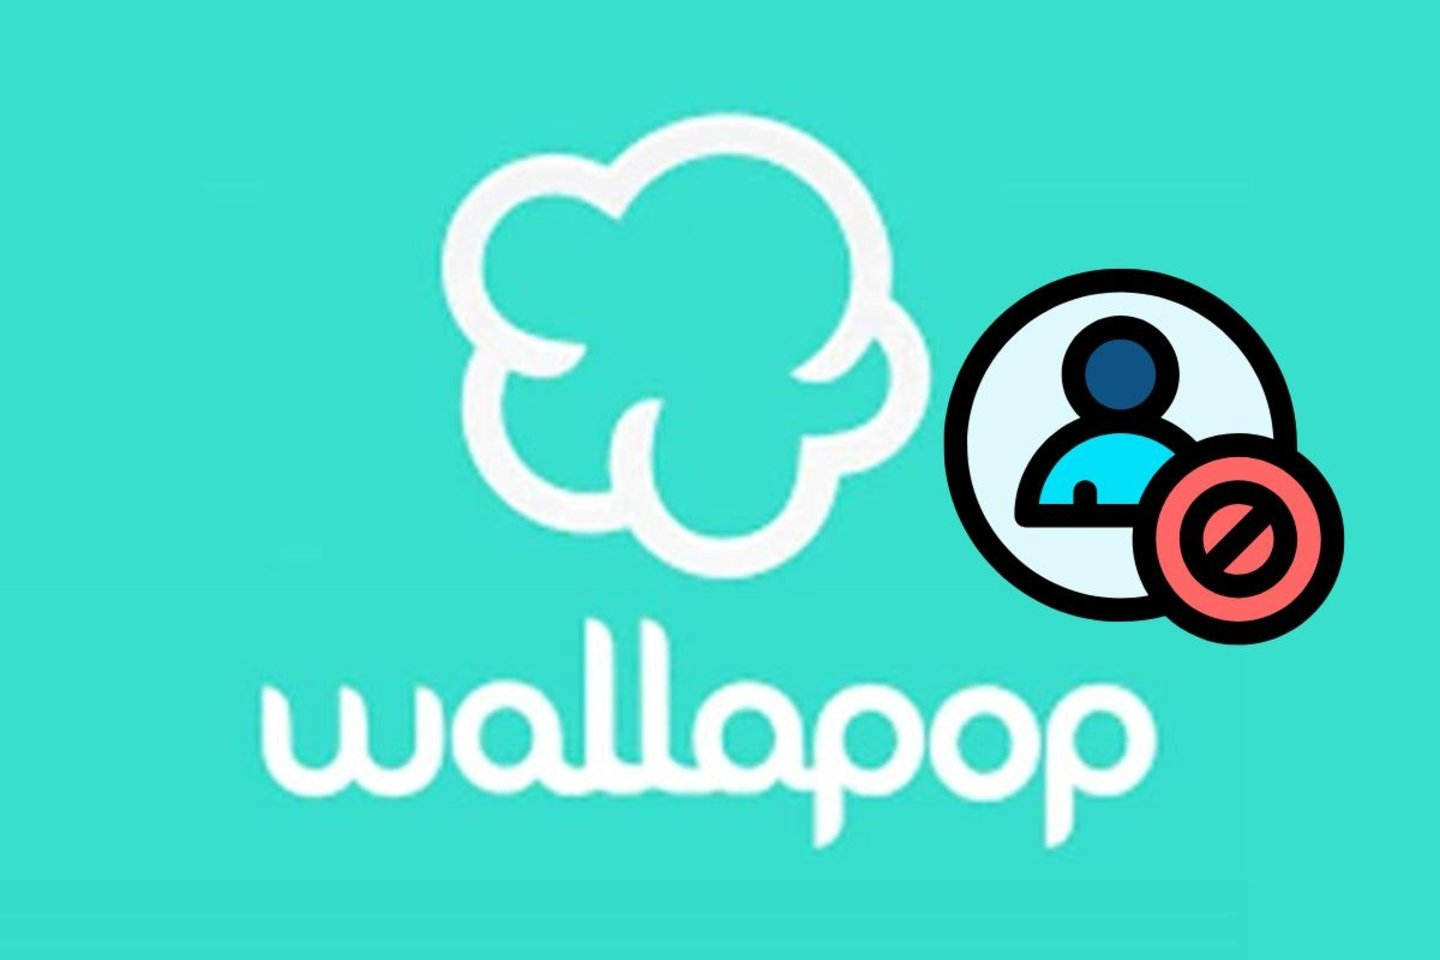 Logo de wallapop junto a un icono de bloqueo